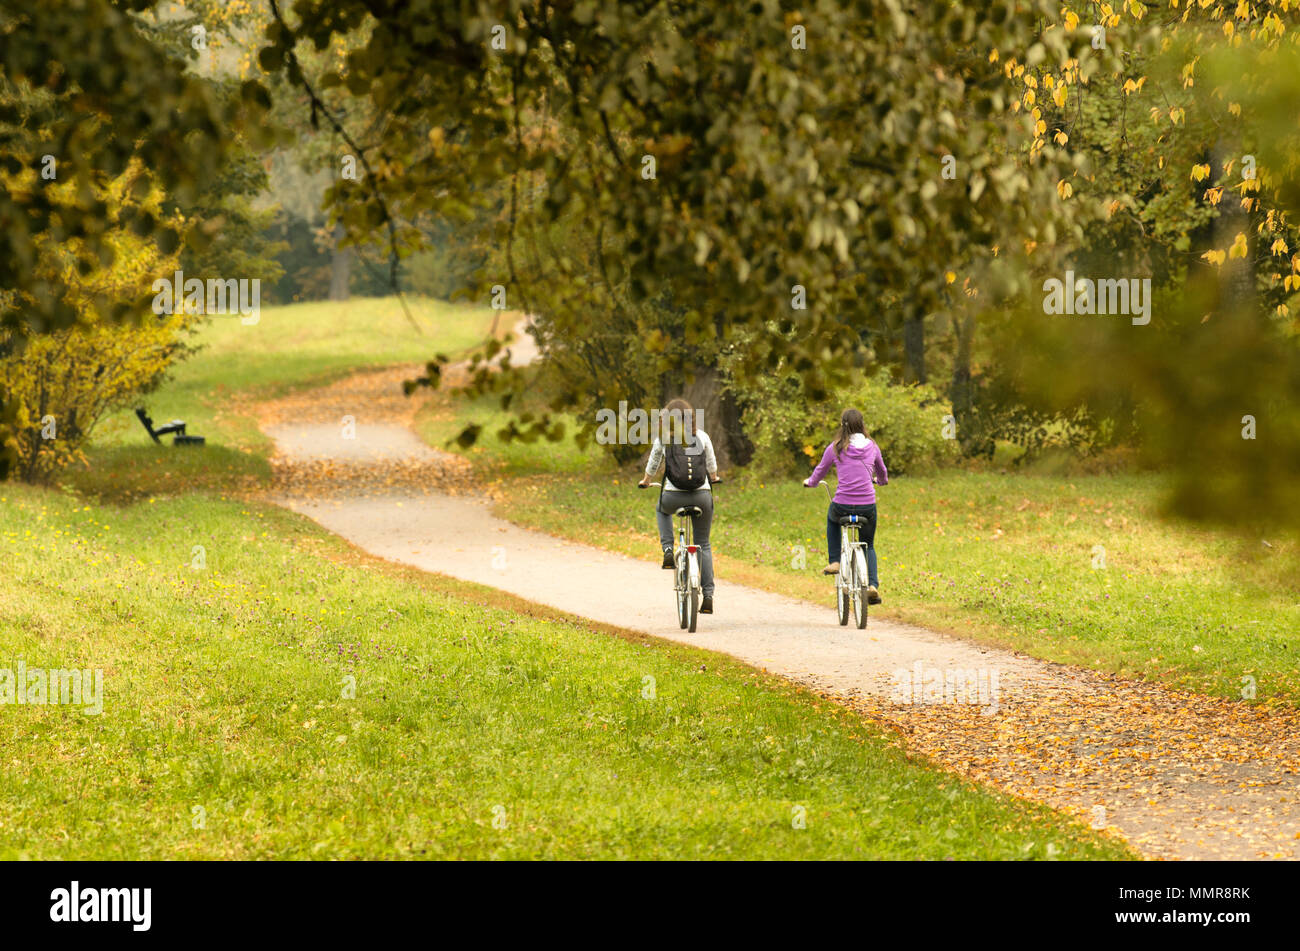 Zwei Radfahrer auf Herbst weg. Nicht identifizierte Personen mit dem Rücken zum Betrachter Stockfoto